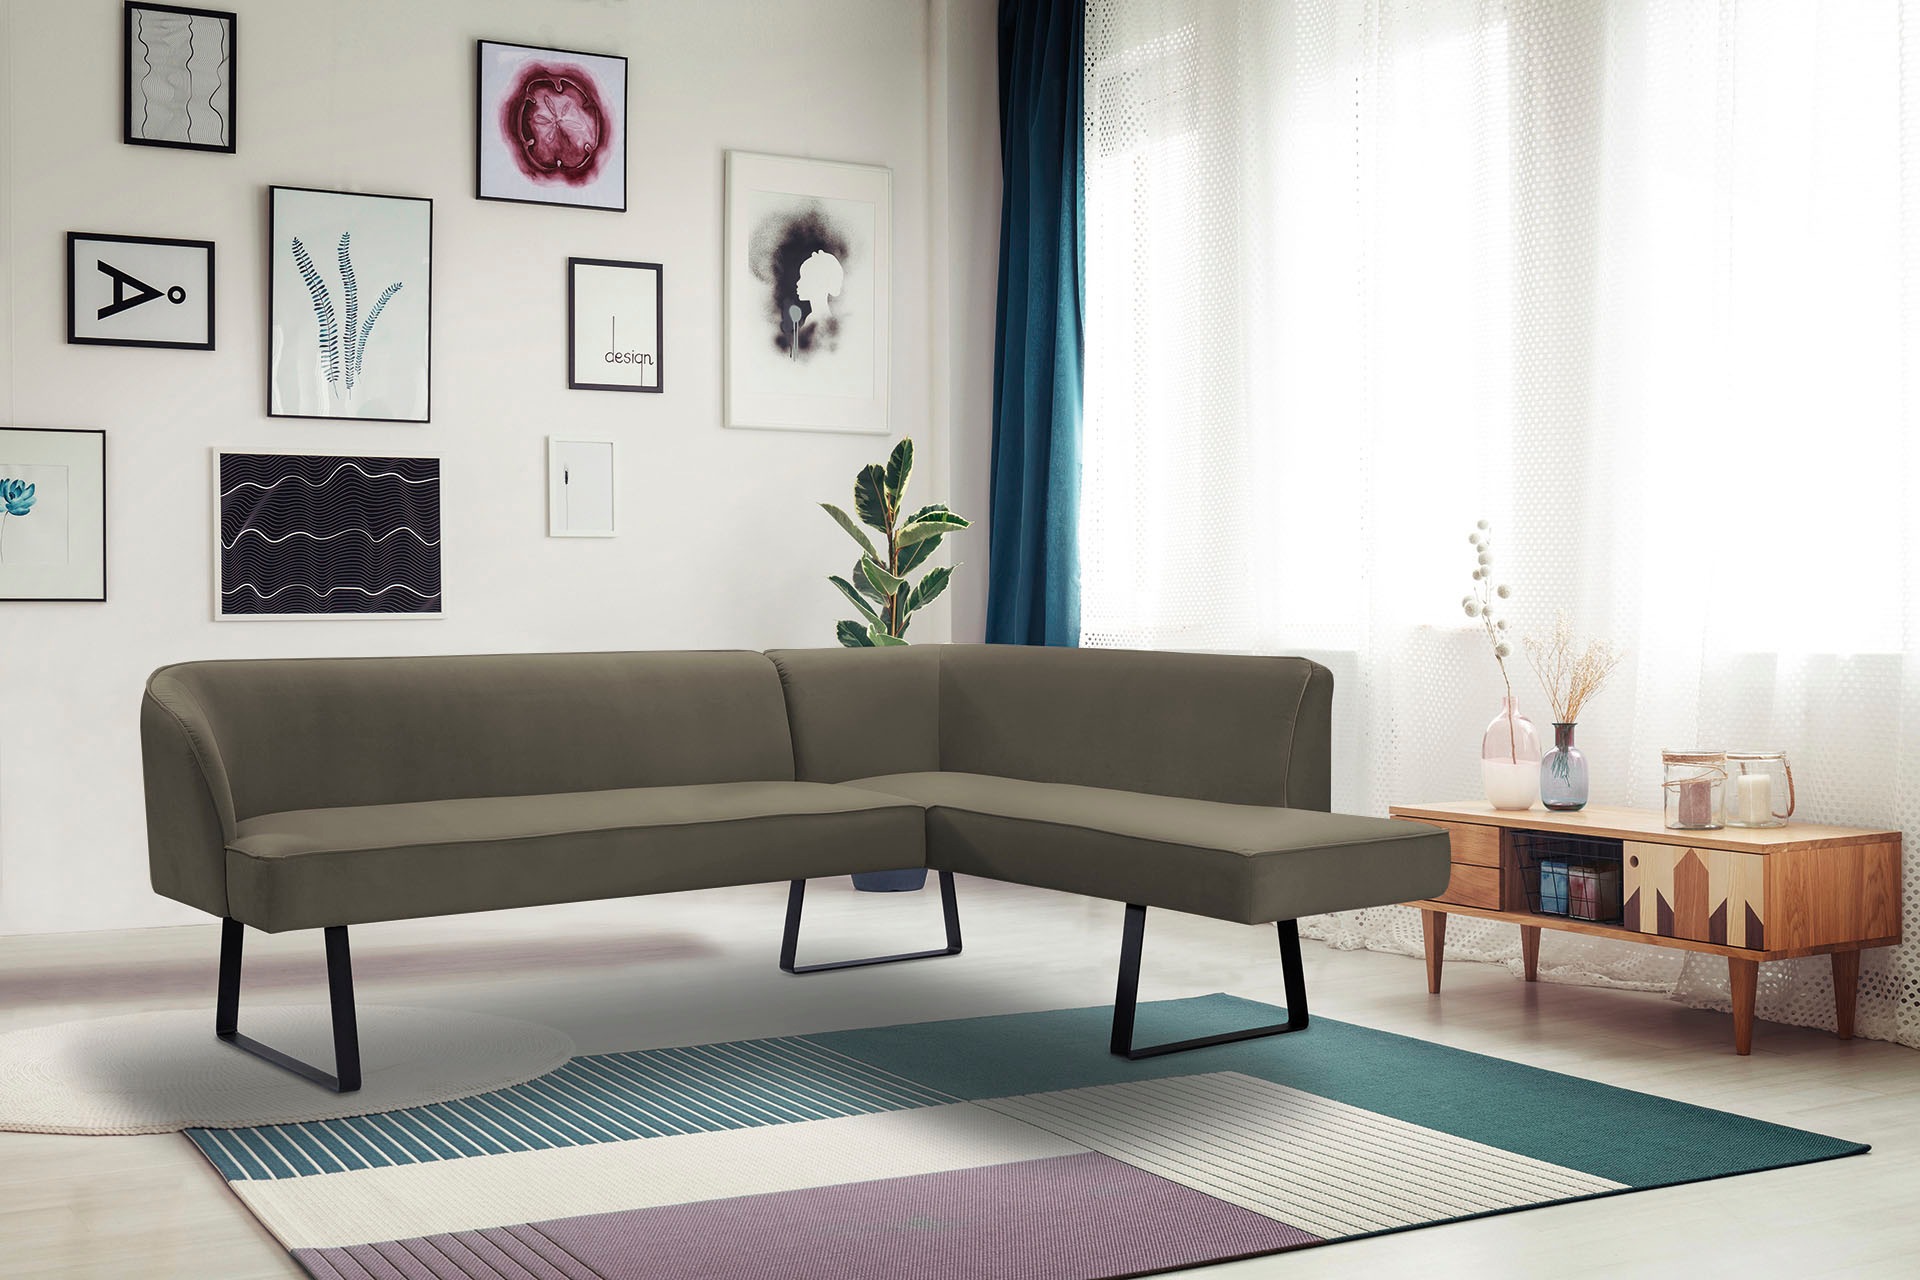 exxpo - sofa fashion Eckbank »Americano«, mit Keder und Metallfüssen, Bezug in verschiedenen Qualitäten